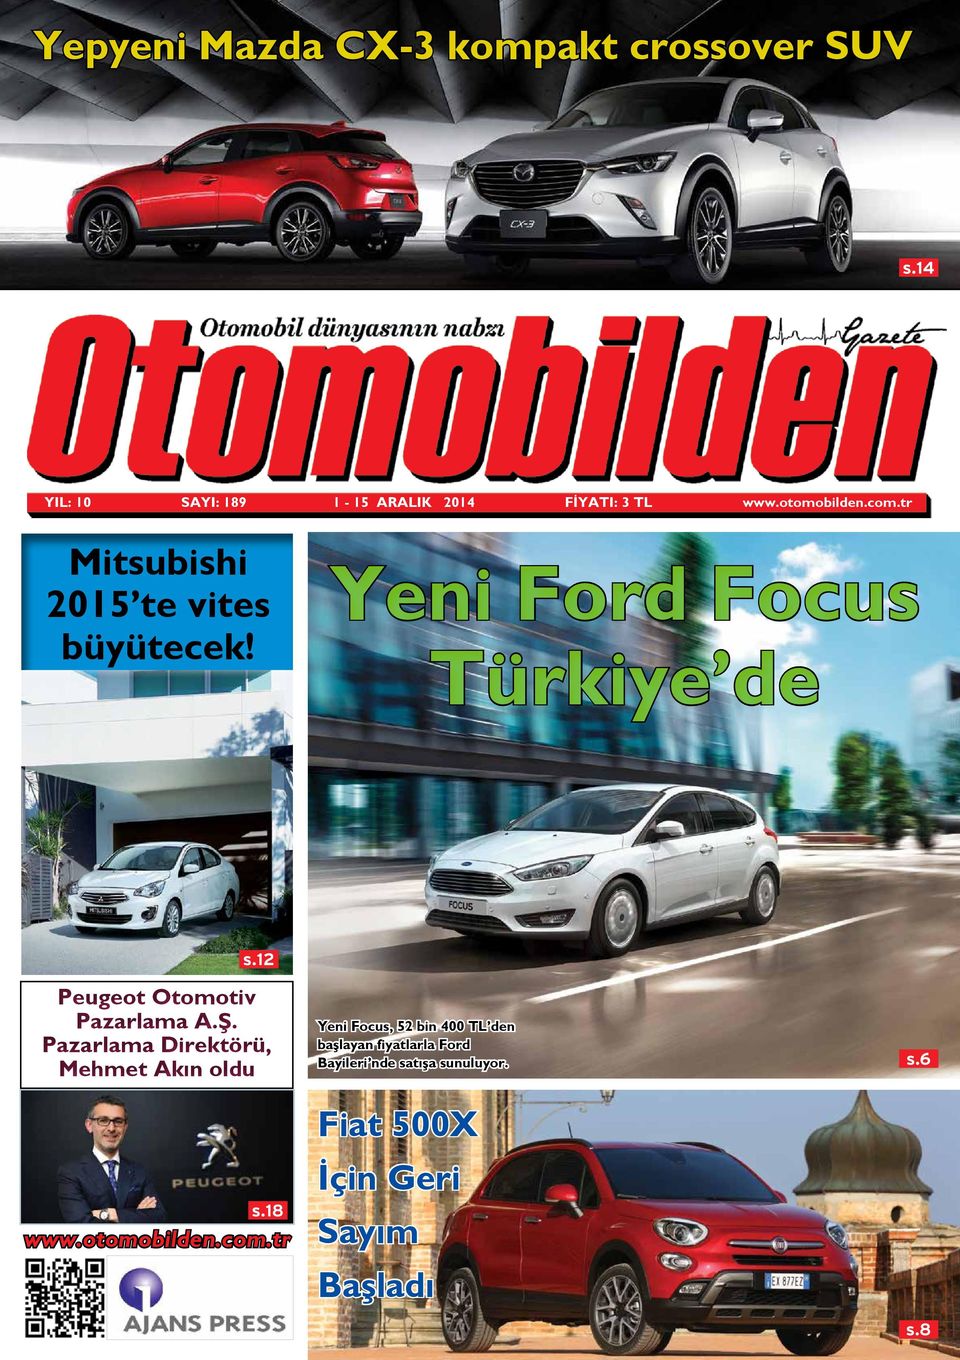 12 Peugeot Otomotiv Pazarlama A.Ş. Pazarlama Direktörü, Mehmet Akın oldu s.18 www.otomobilden.com.